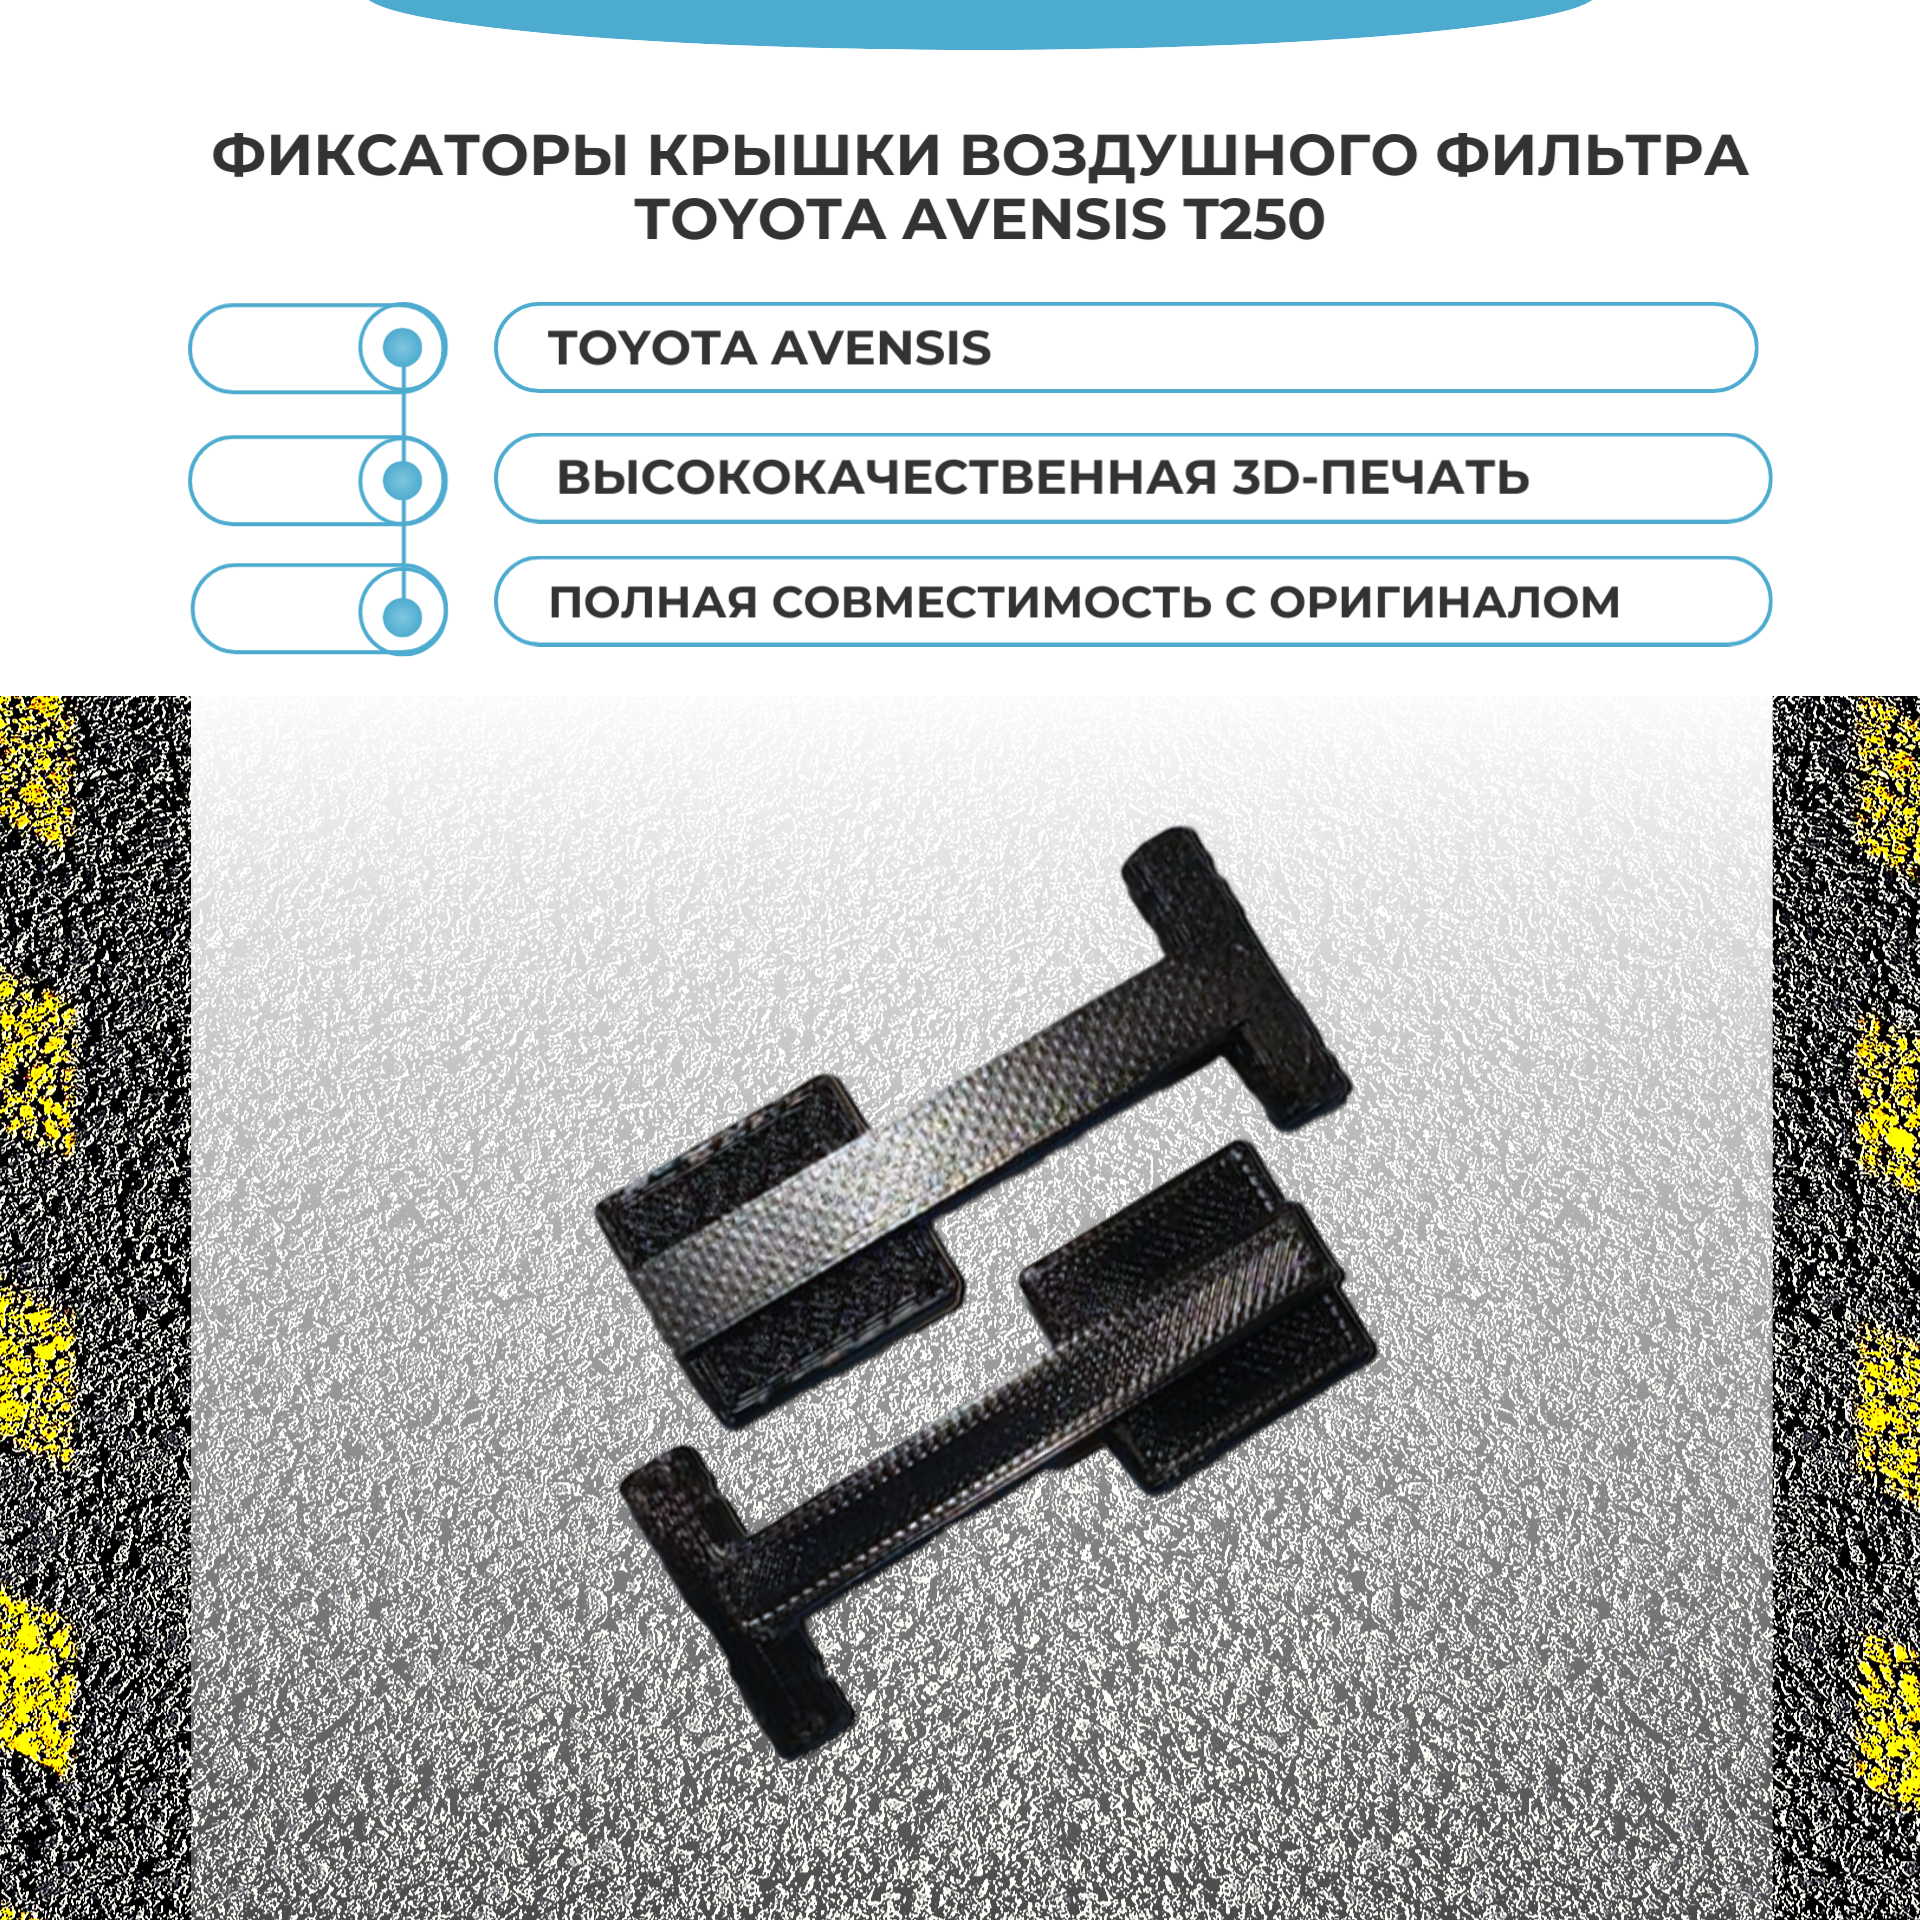 Фиксаторы для крышки воздушного фильтра Toyota Avensis/Corolla. Защелки крышки для Toyota 177860D011 177860D010 - 2шт.